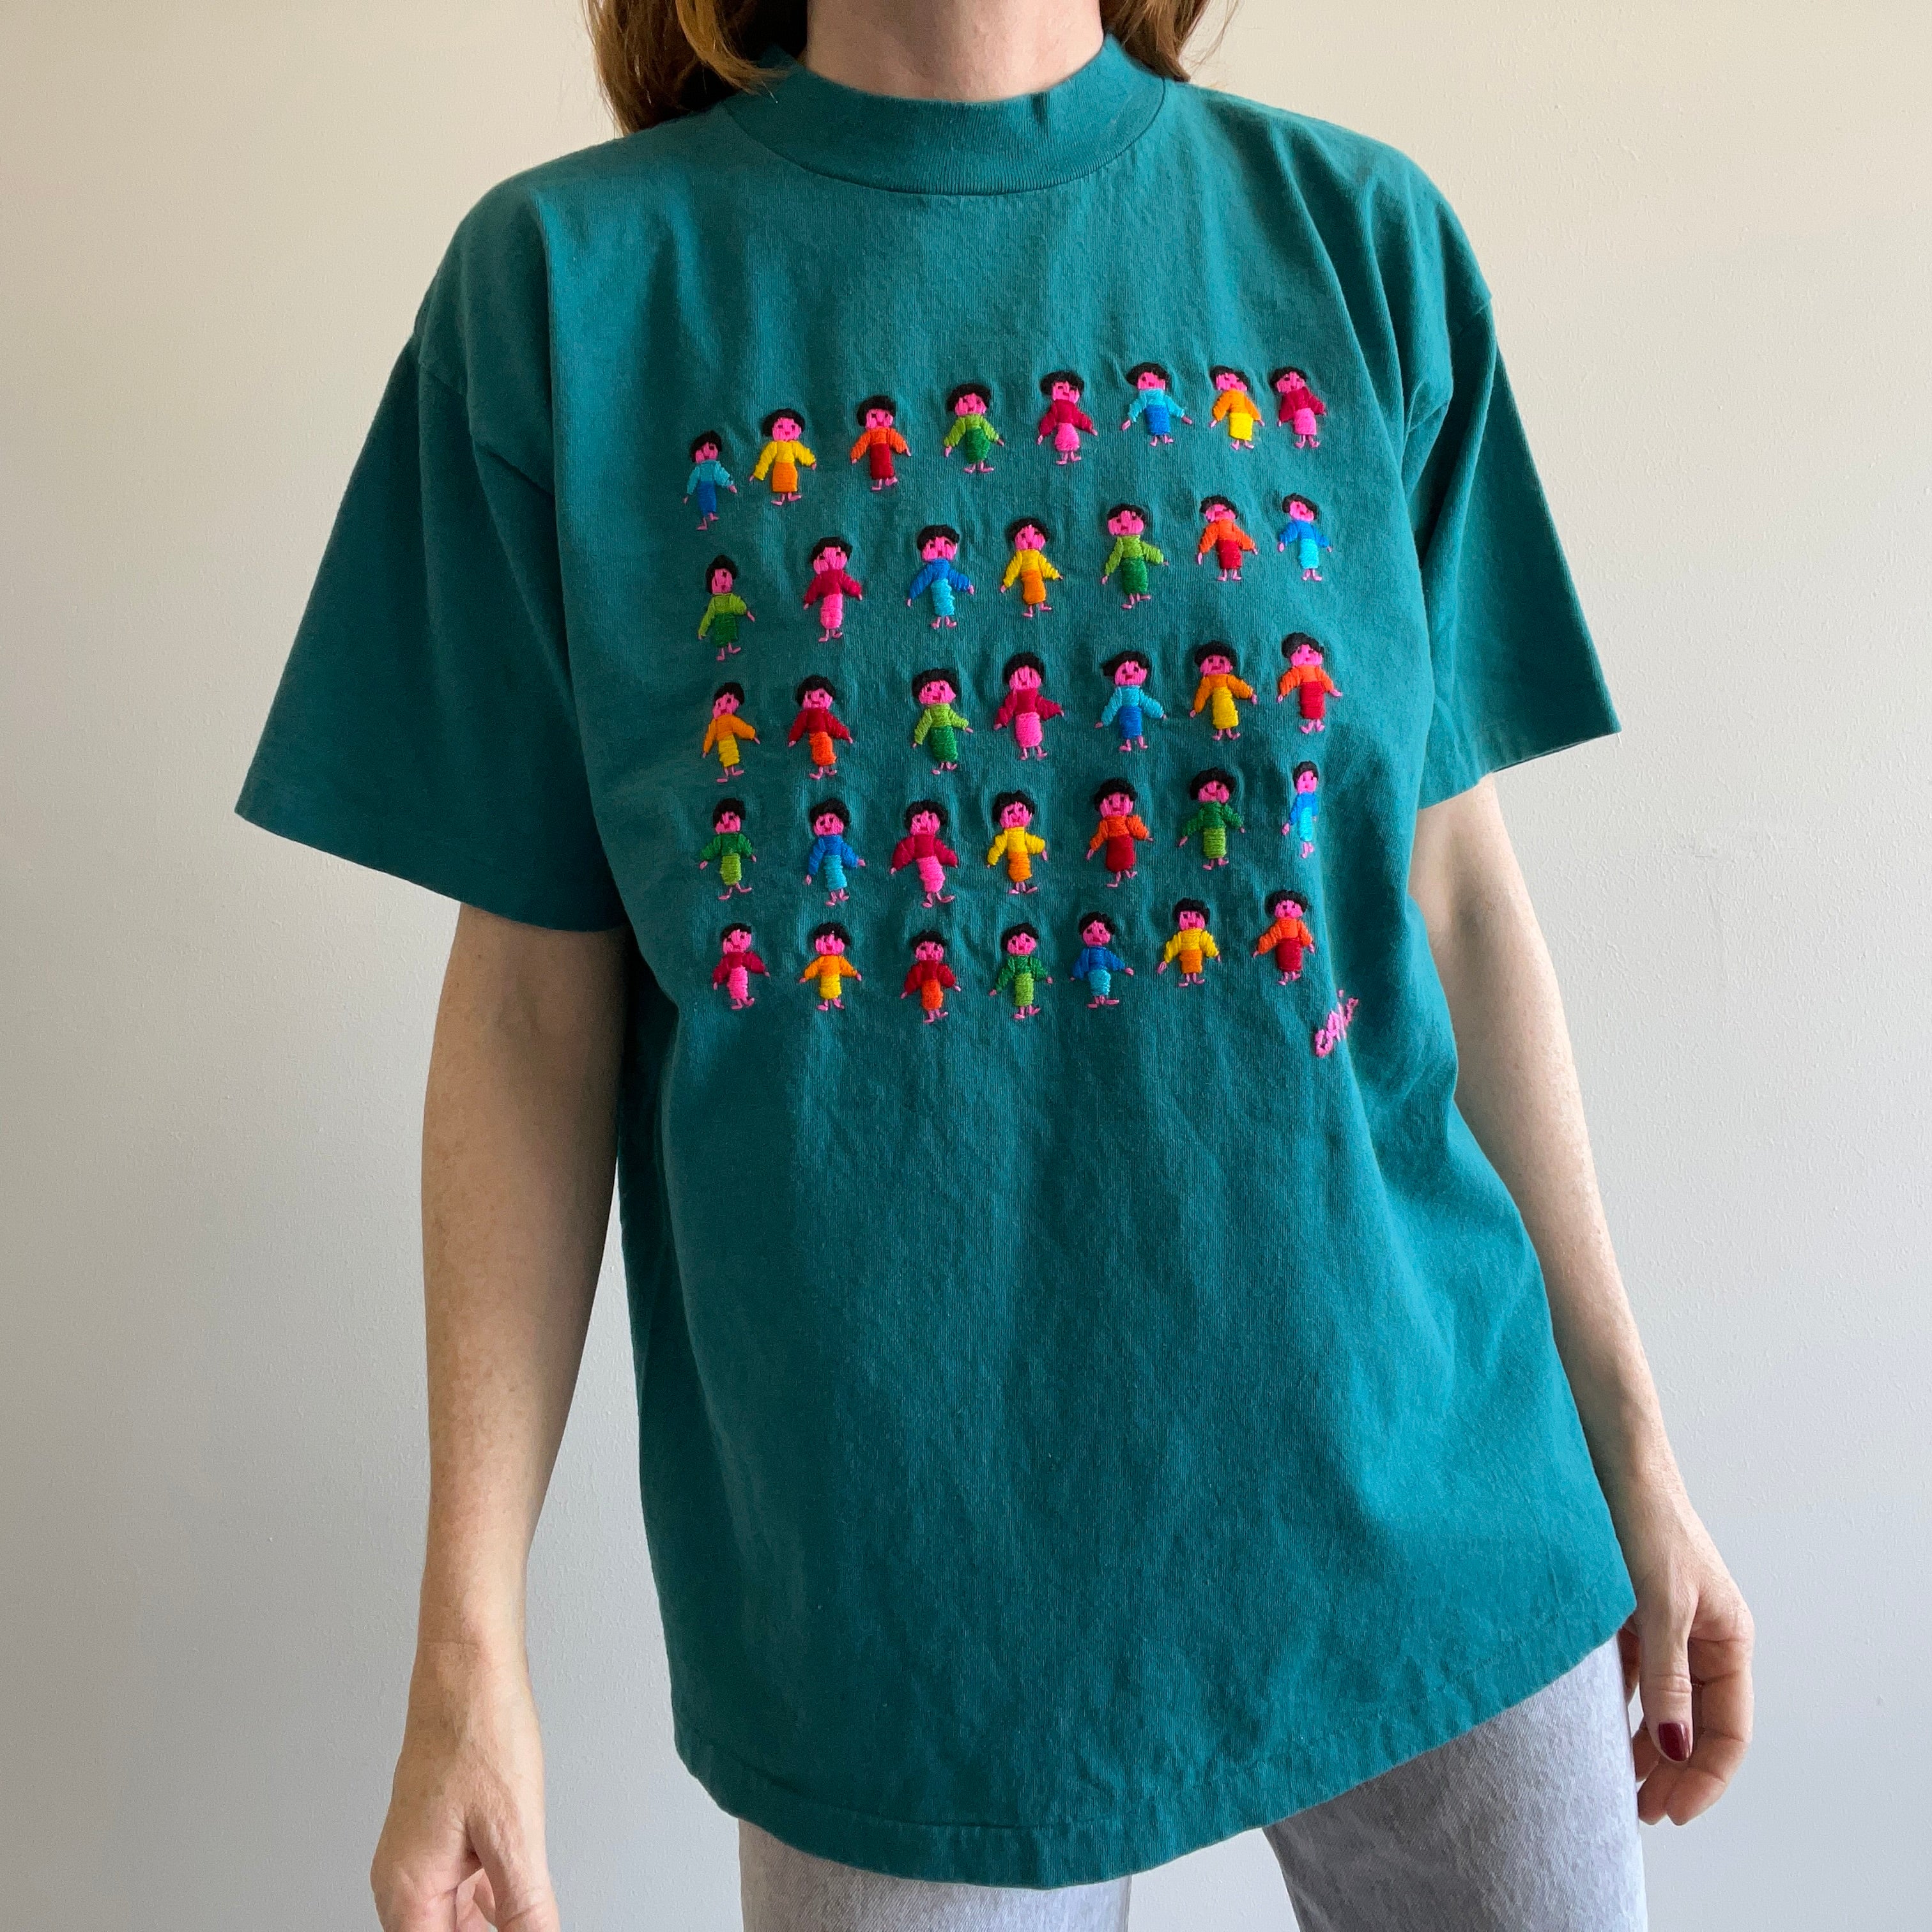 1980/90s Worry Doll (?) Knit T-Shirt - WOWOWOWOW